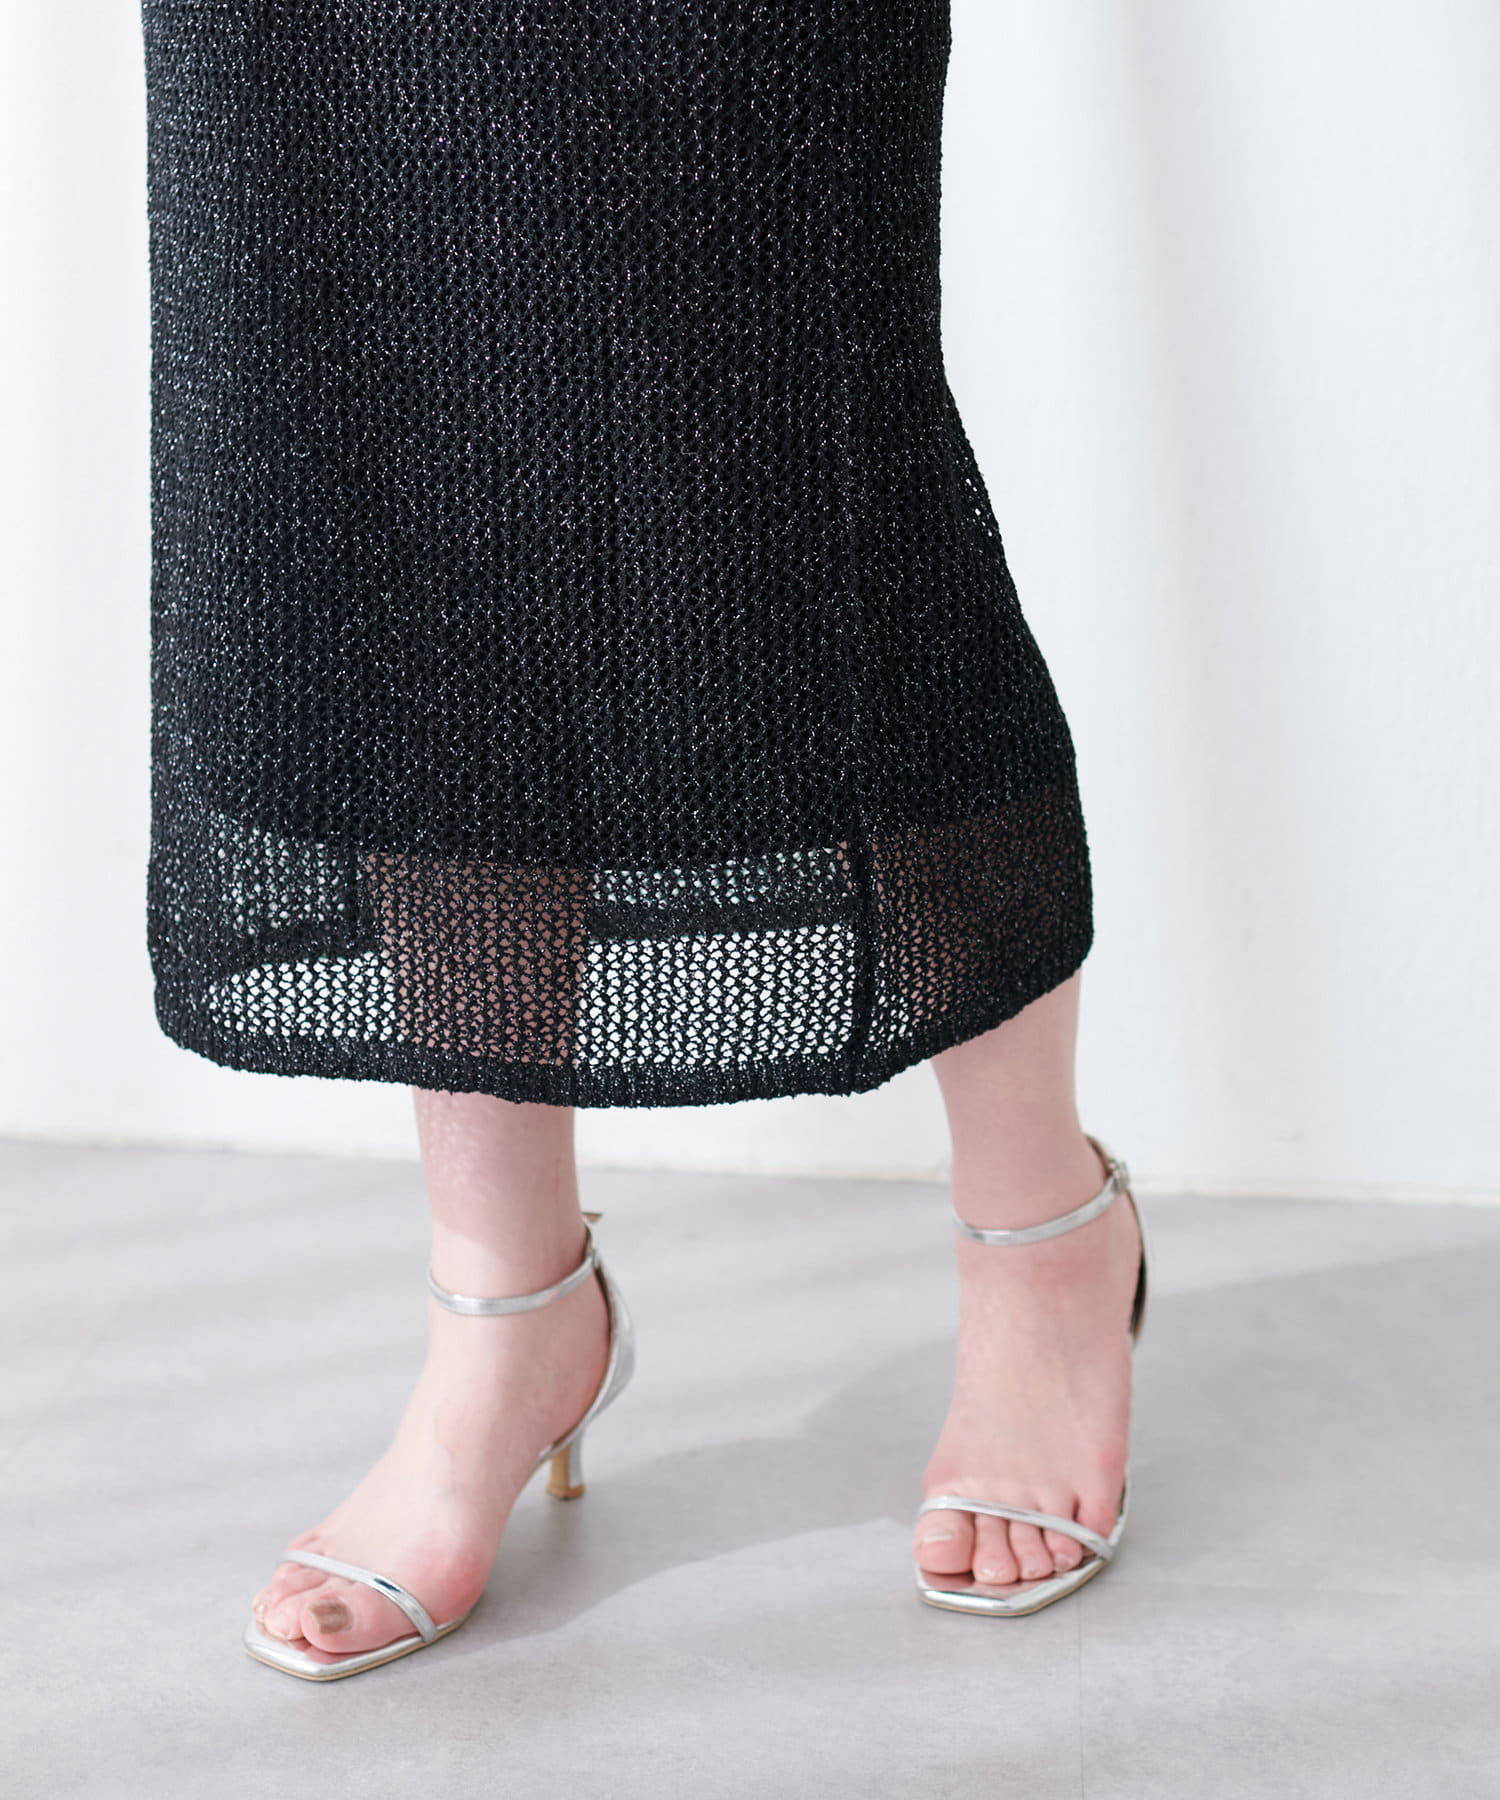 natural couture(ナチュラルクチュール) メッシュタイトニットスカート